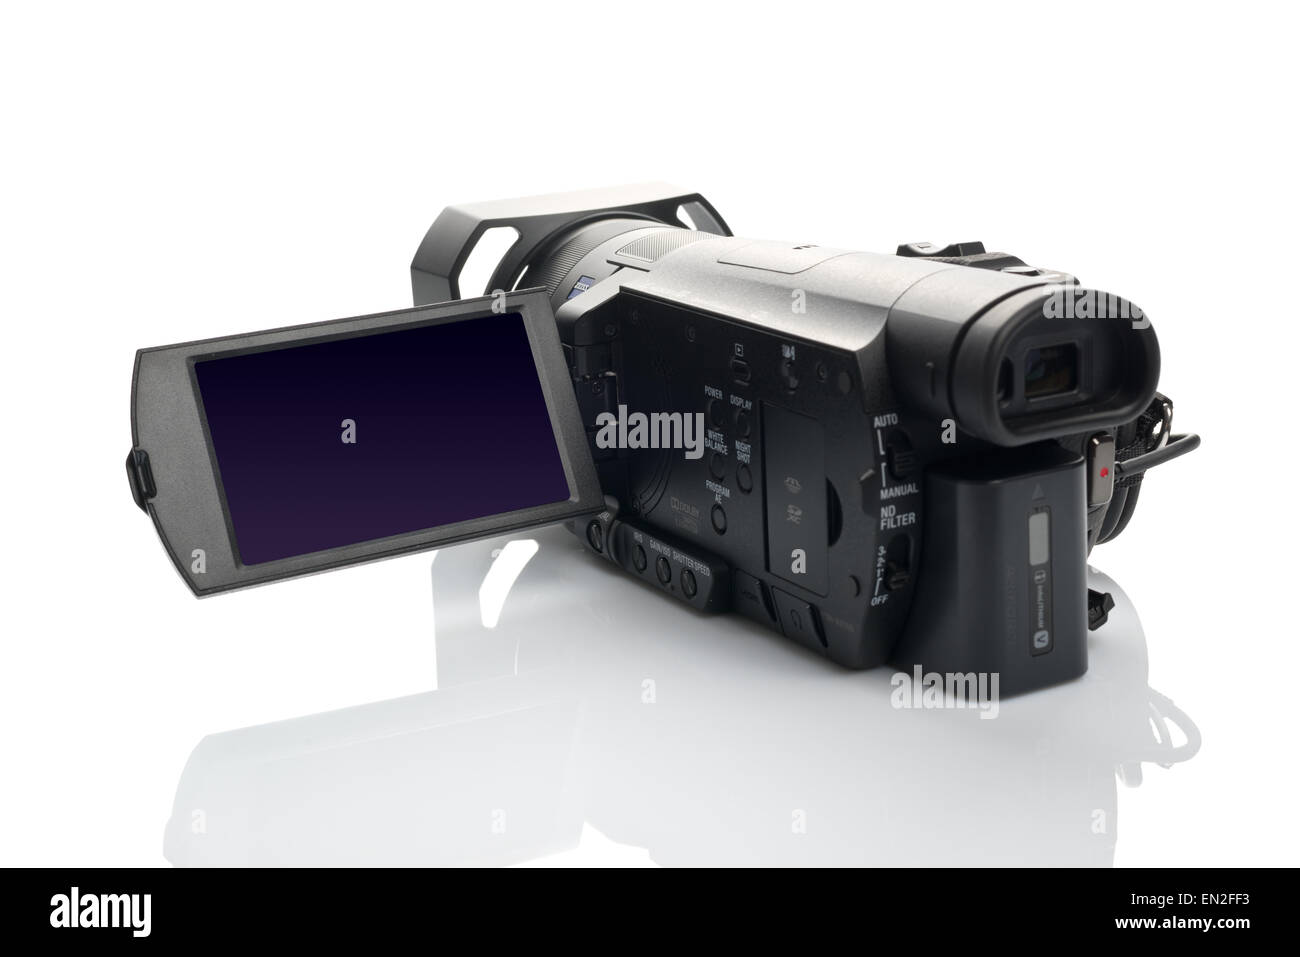 Caméscope numérique SONY 4K FDR AX100 - noir